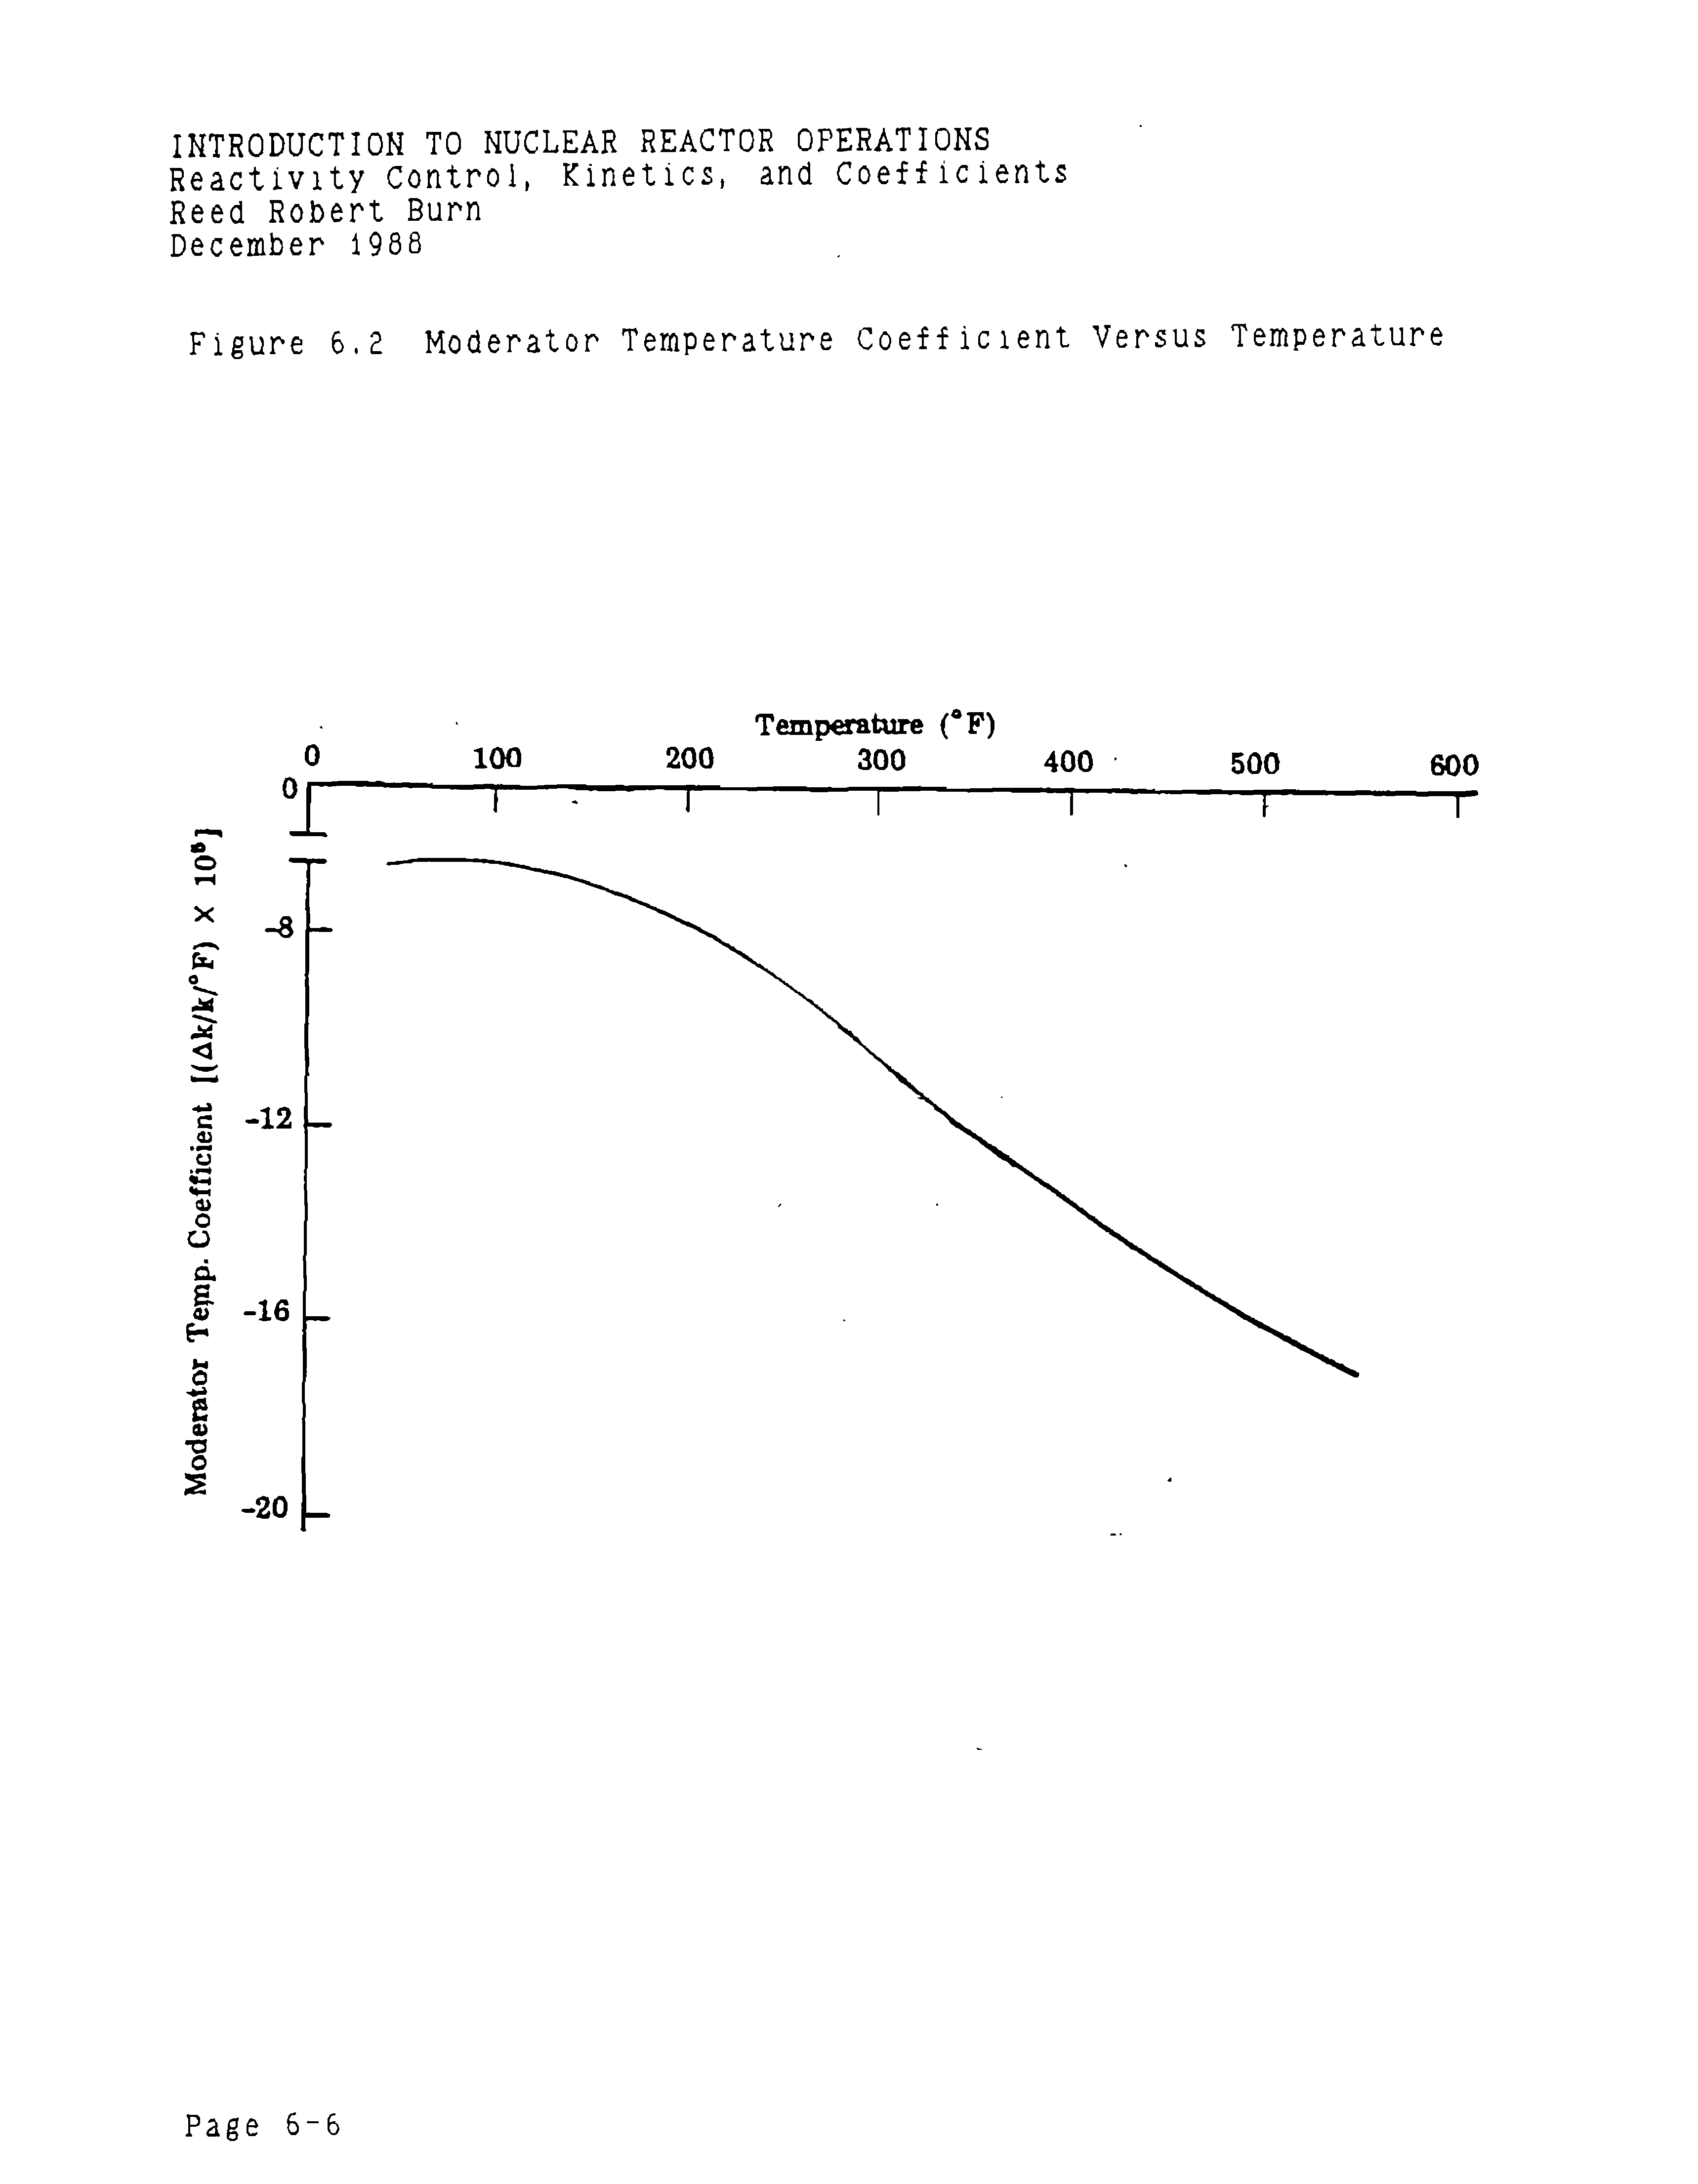 Figure 6.2 Moderator Temperature Coefficient Versus Temperature...